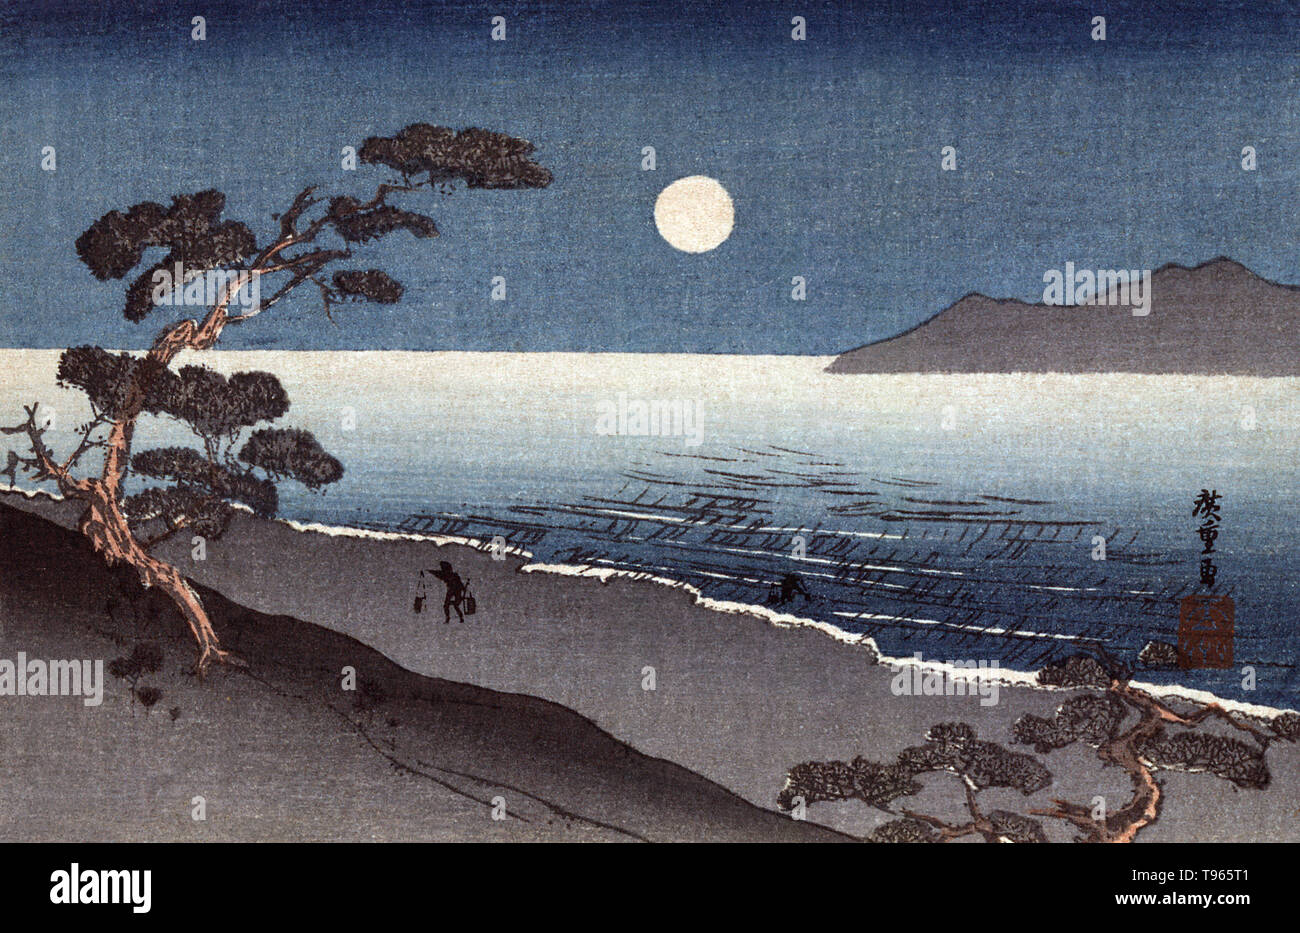 Eine Fee Mond und einen einsamen Ufer. Zeigt einen Mann mit einer Schulter Pole entlang eine moonlite Ufer. Der Begriff Märchen Mond (Schwarzer Mond) bezieht sich auf eine zusätzliche neue Mond, in einem Monat oder in einer Jahreszeit wird angezeigt. Es kann auch das Fehlen der Vollmond oder Neumond in einem Monat beziehen. Seit alten Zeiten die Japaner die Kombination von Schnee, Blumen, Mond betrachtet haben, und die Schönheiten der Natur. Stockfoto